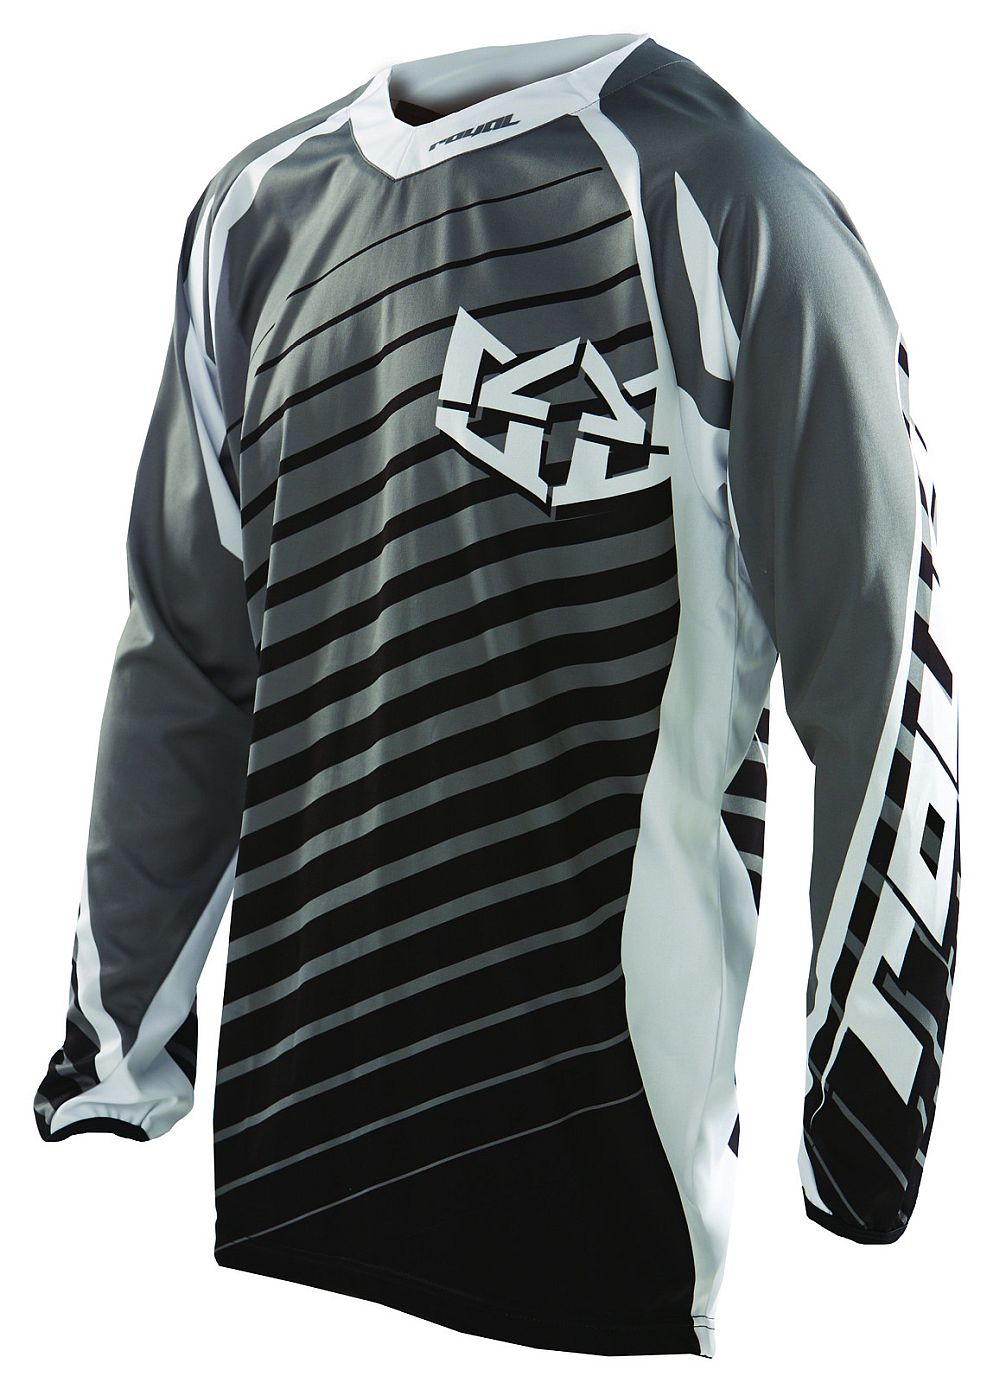 Royal SP247 jersey - Graphite Black size XL